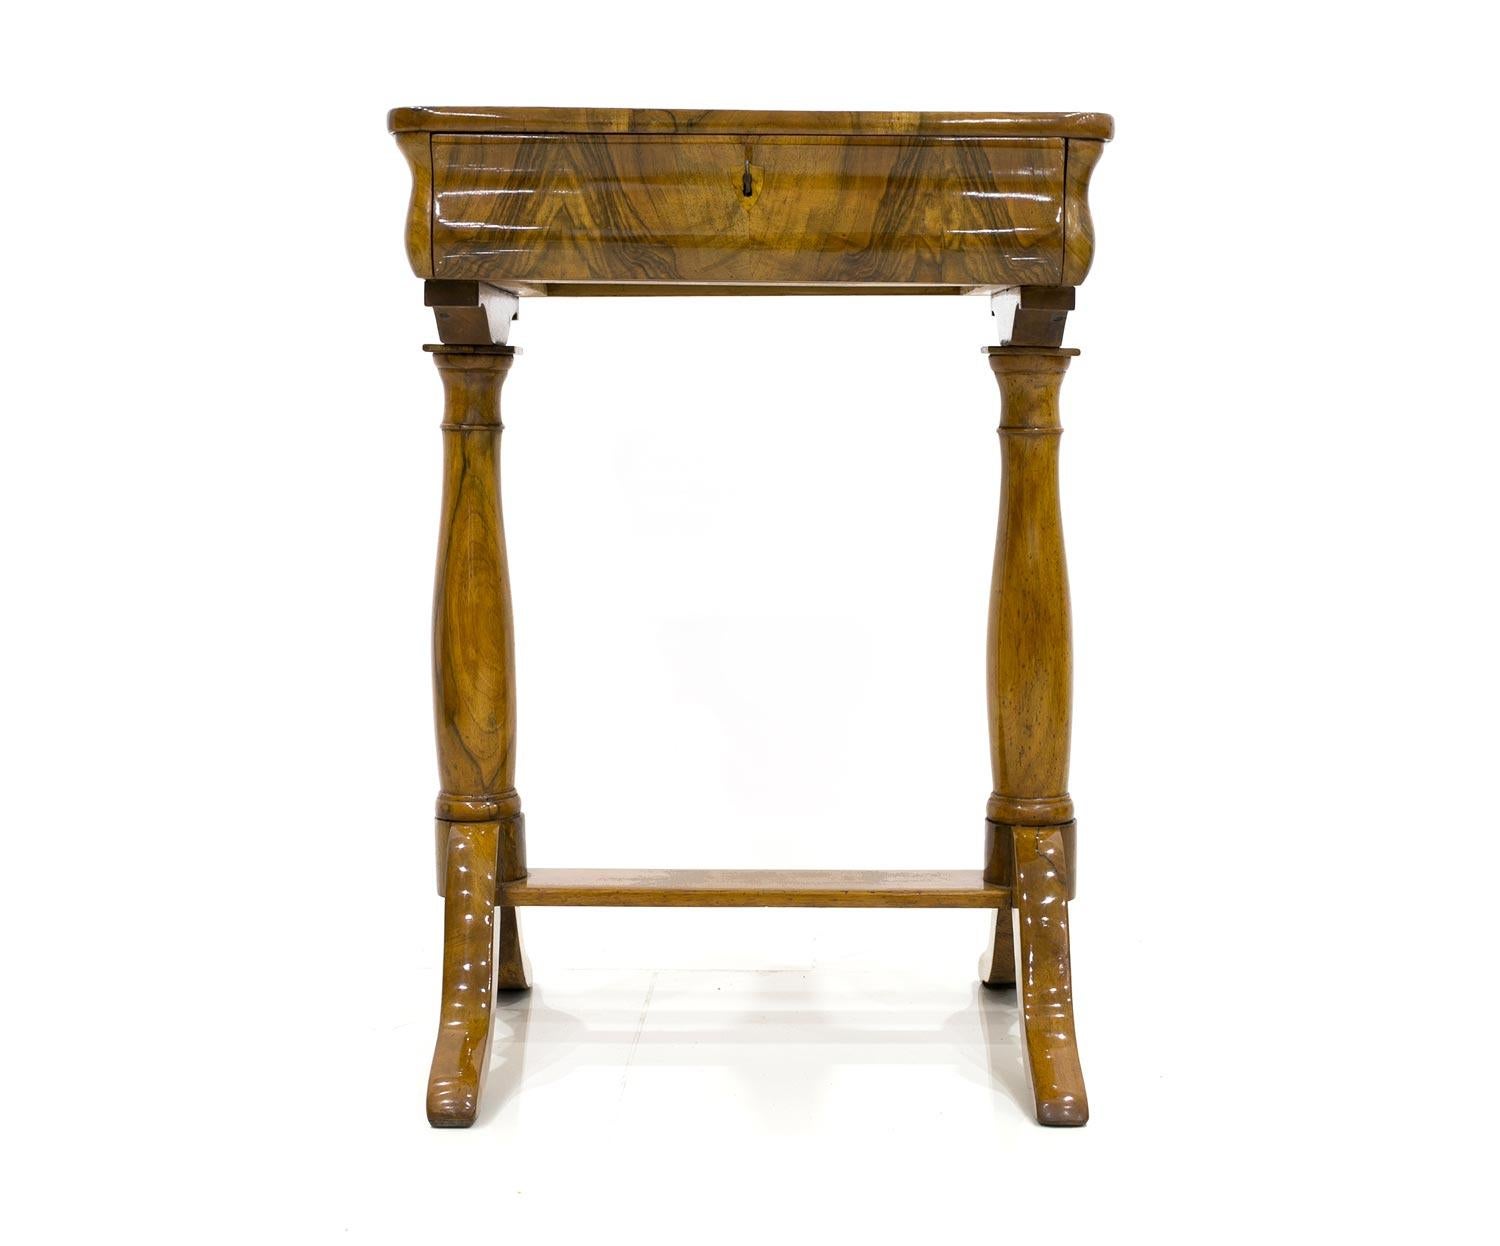 Dekorativer Tisch, sogenannter Fadentisch im Biedermeierstil. Die Möbel wurden sehr behutsam und professionell restauriert. Das Ursprungsland ist Deutschland. Das Stück wurde um 1830 hergestellt. Er ist aus Nussbaumholz gefertigt und die Platte ist